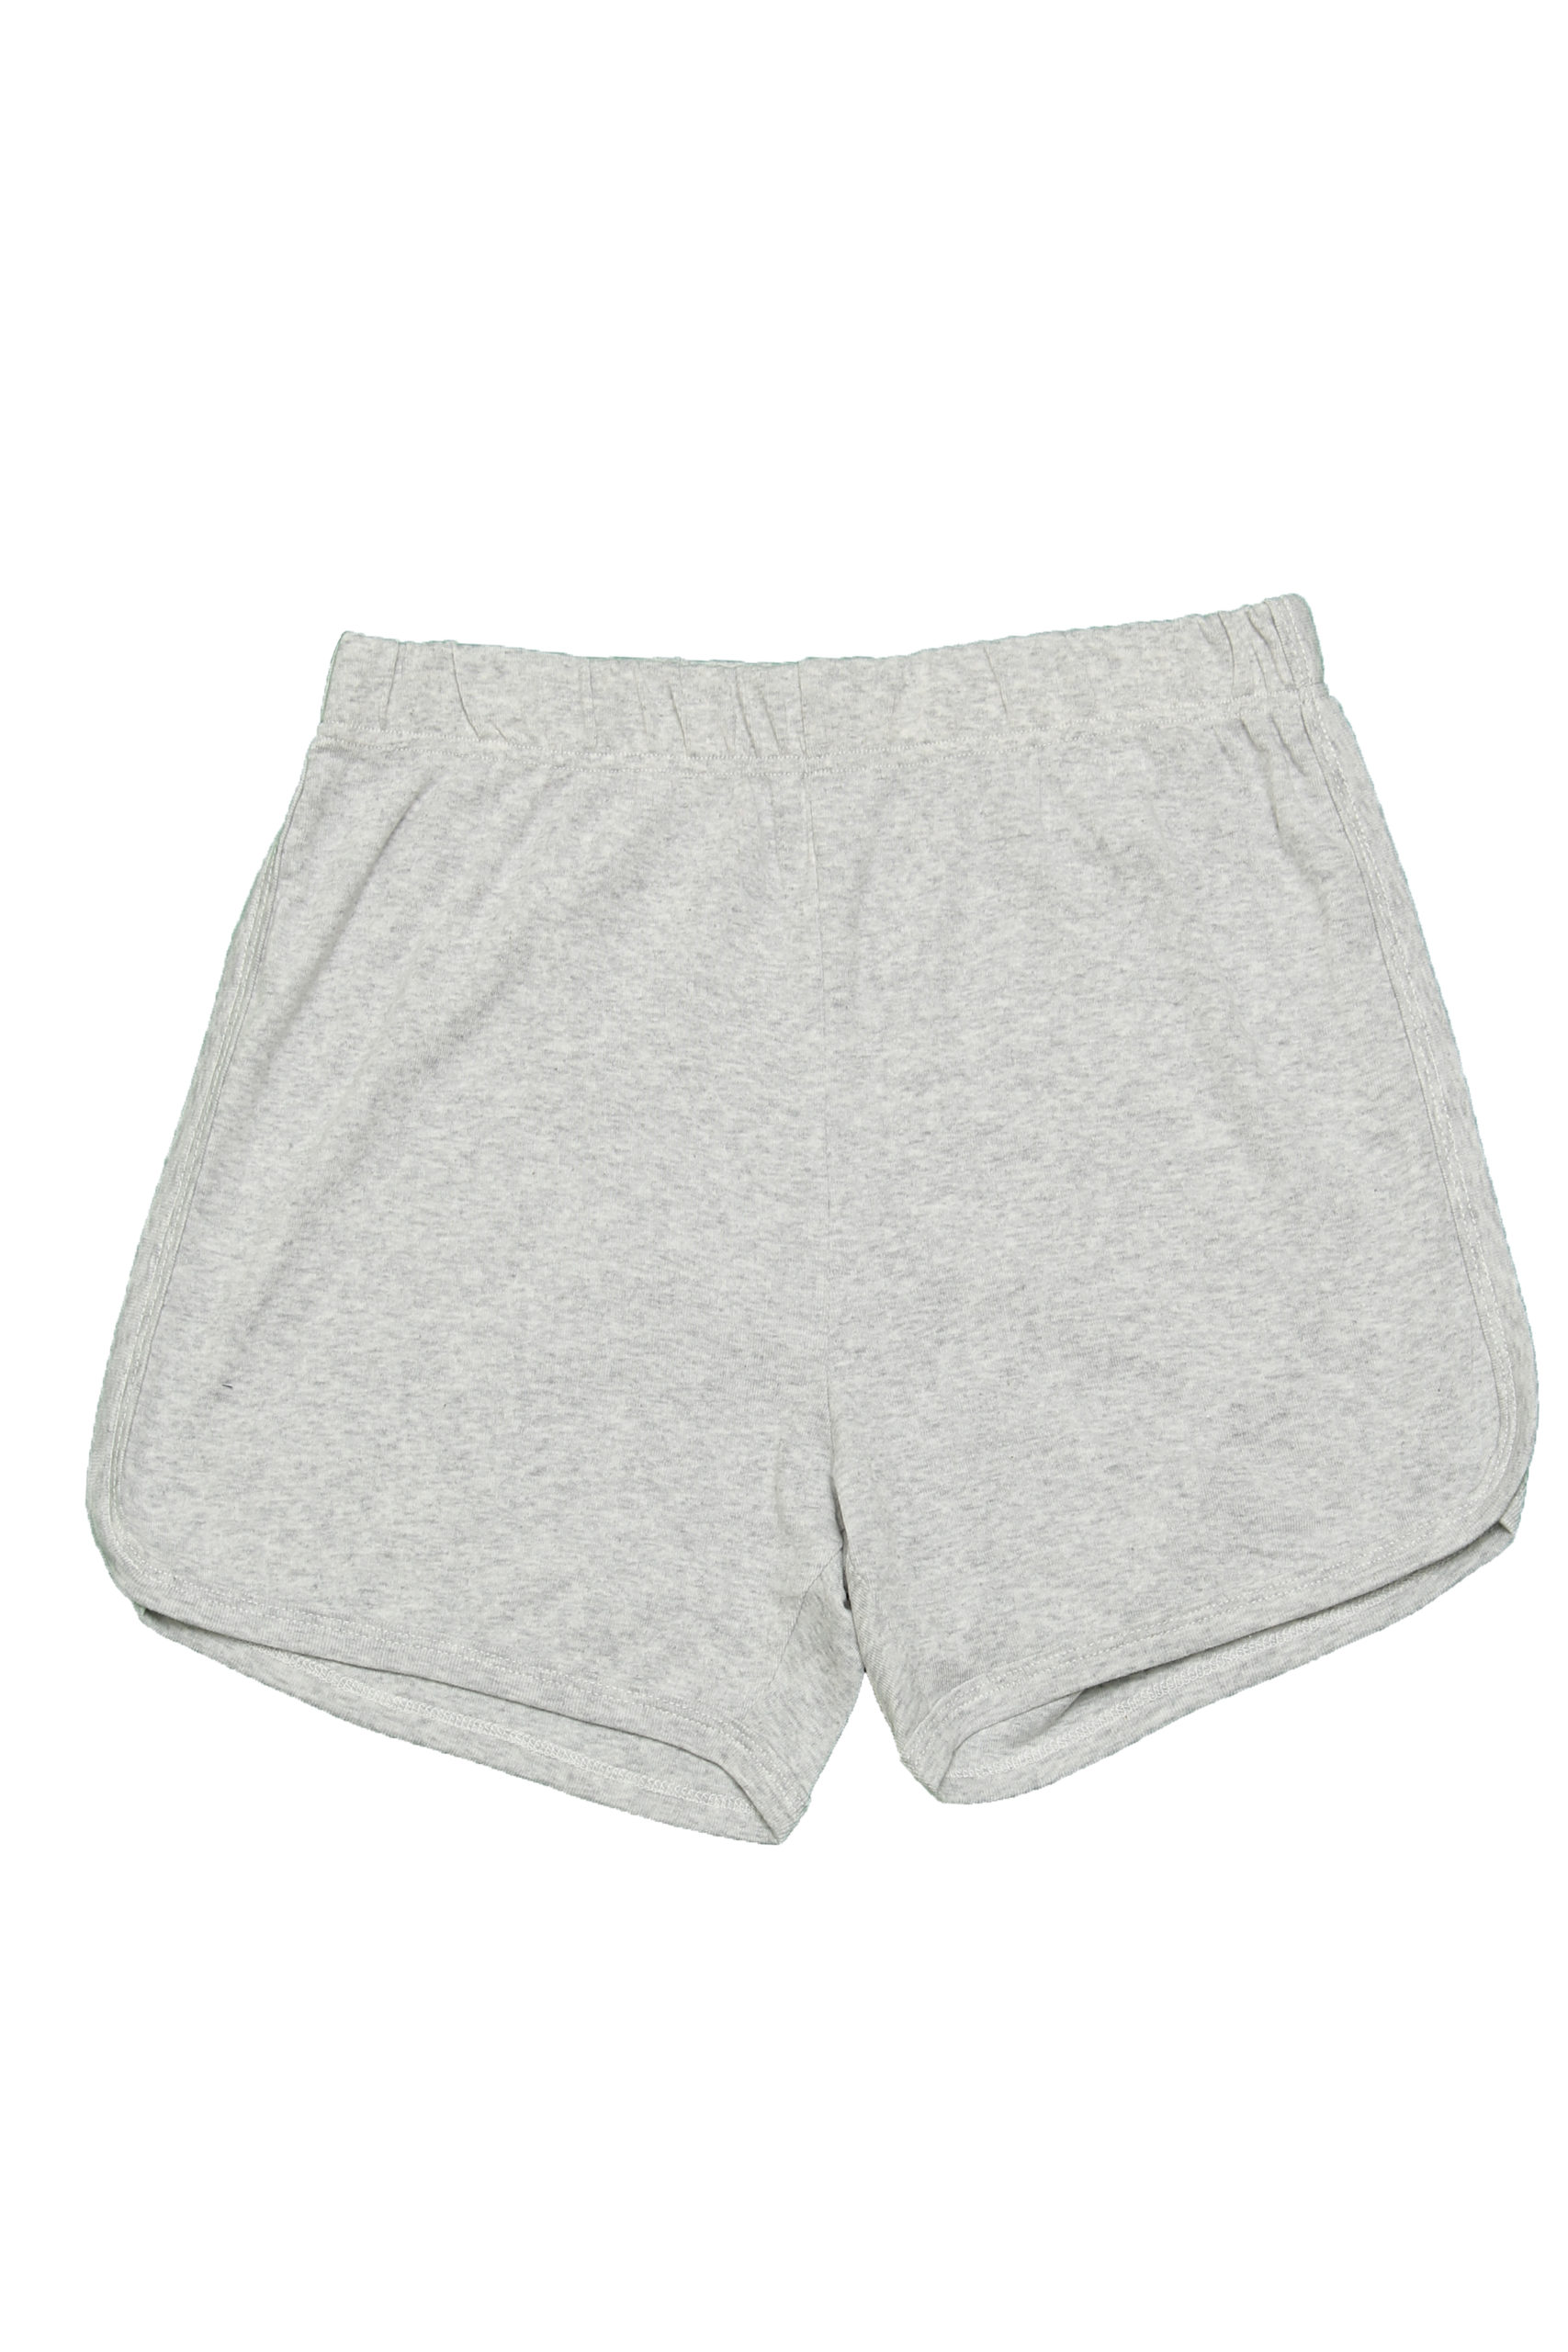 Comfy Grey Shorts